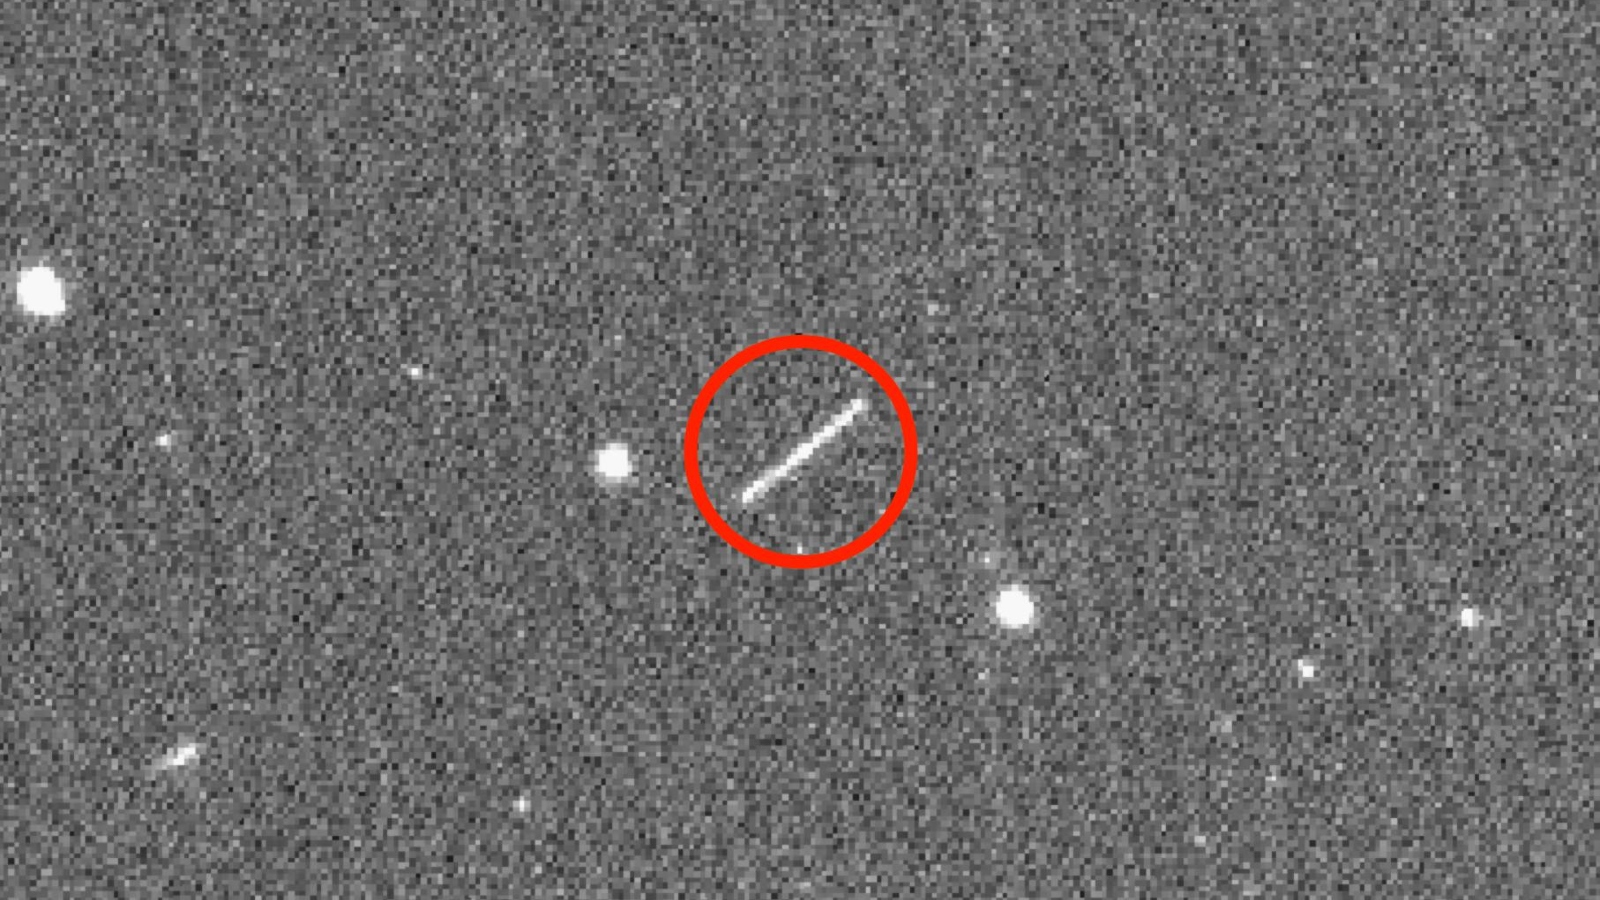 Moins de 3 000 kilomètres : jamais un astéroïde n'avait frôlé d'aussi près la Terre